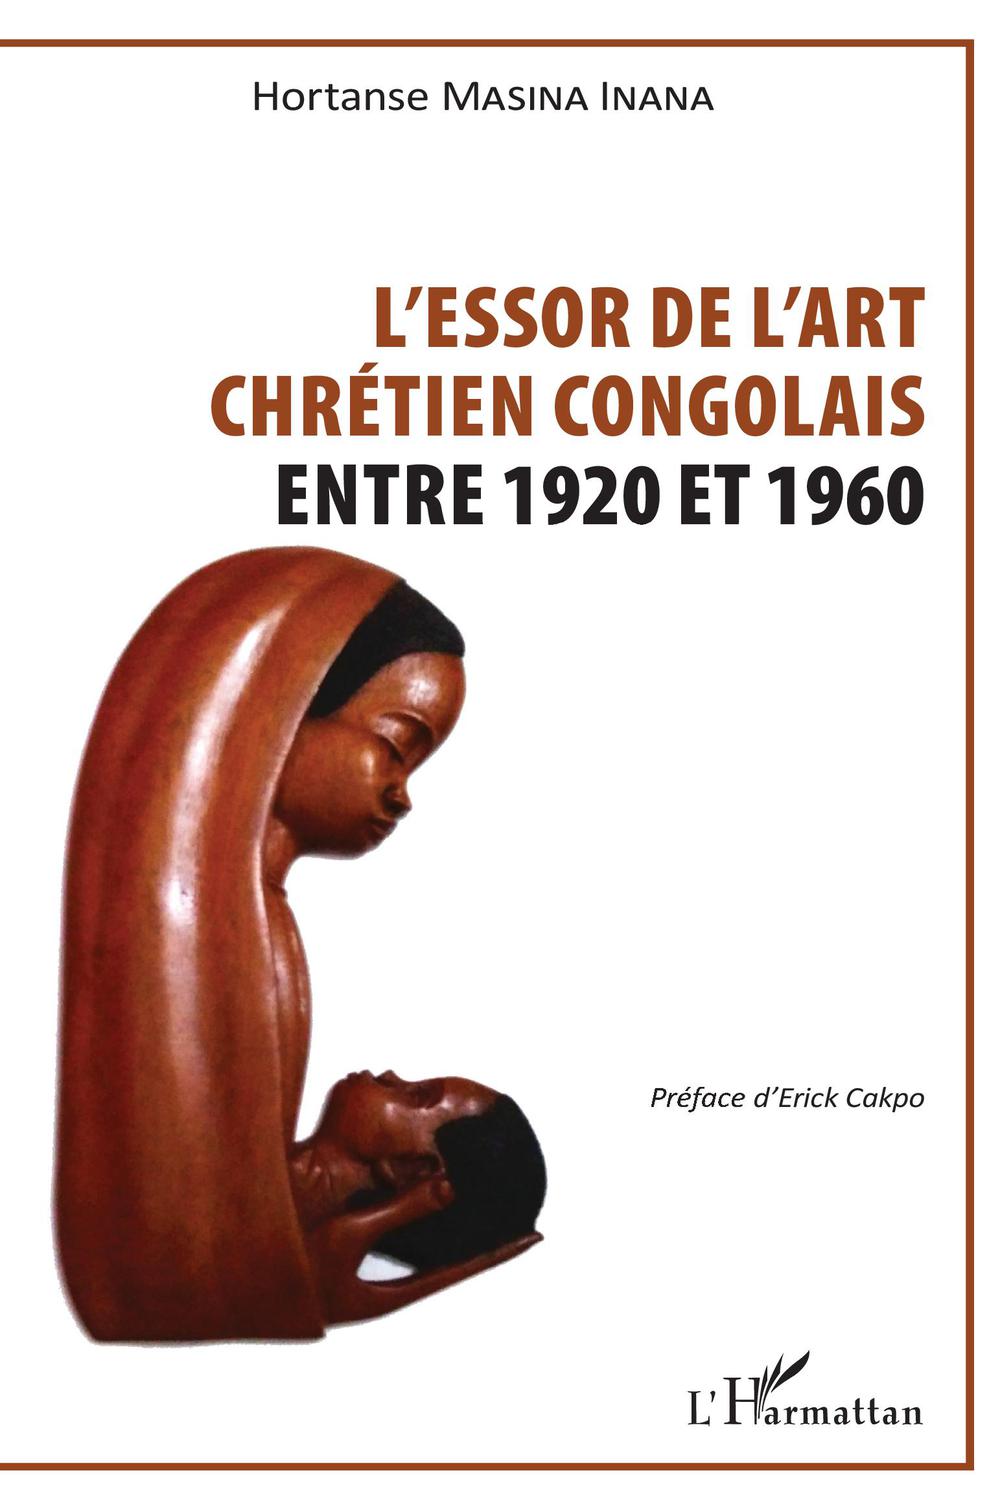 Essor de l'art chrétien congolais - Hortanse Masina Inana